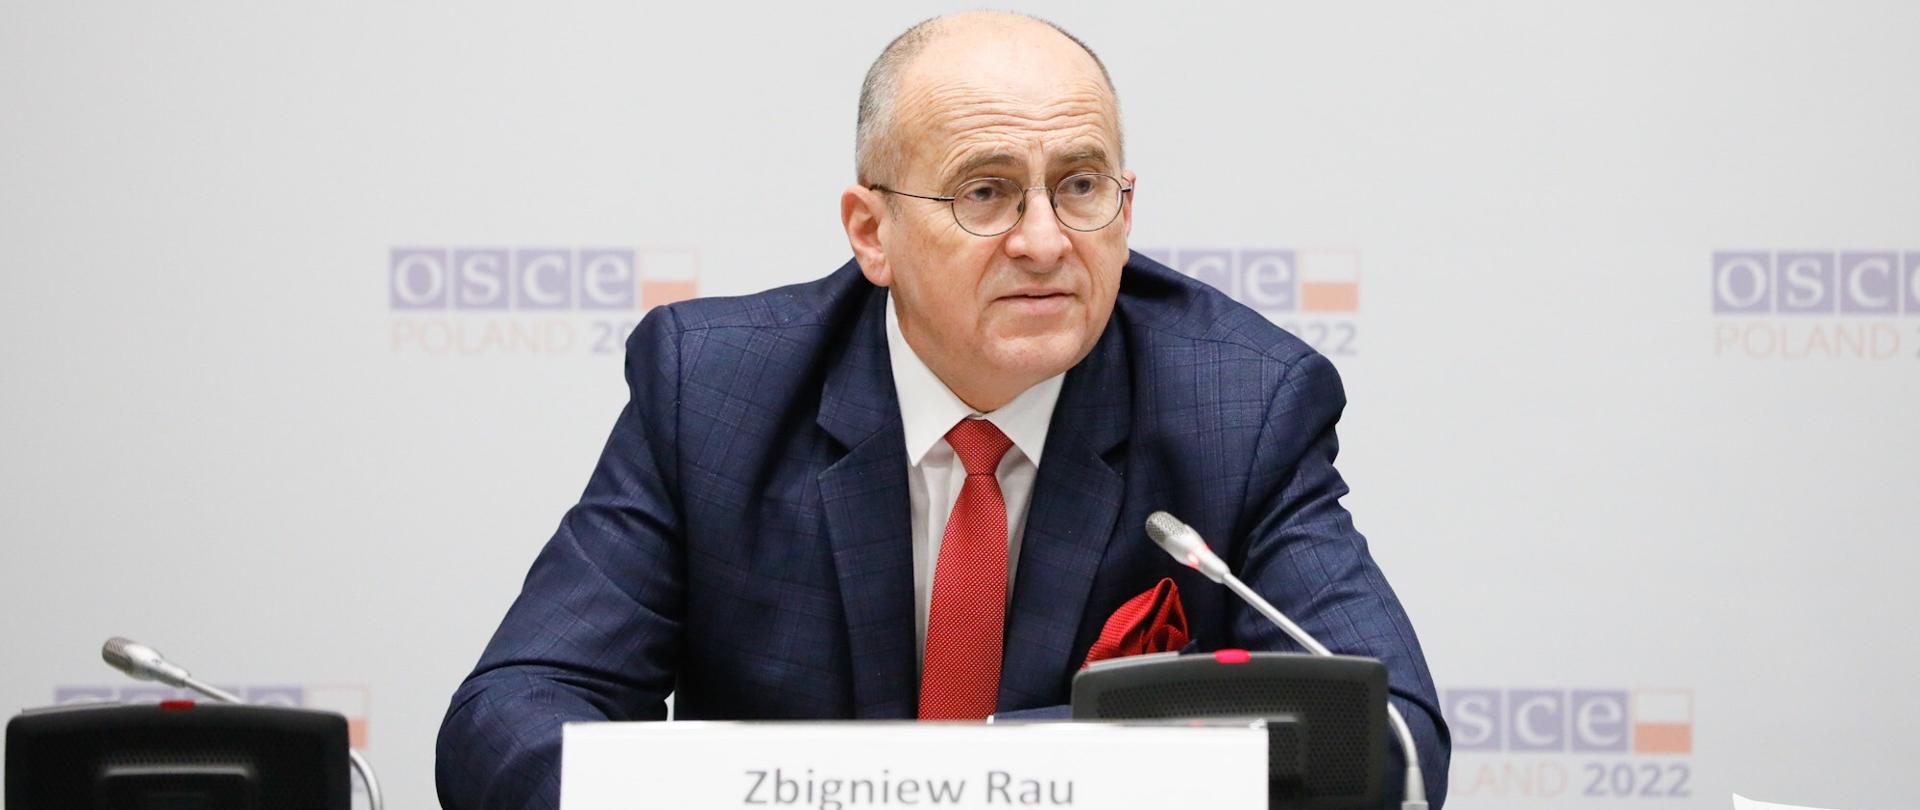 Minister Zbigniew Rau zainicjował w Wiedniu proces odnowienia dialogu na temat bezpieczeństwa europejskiego